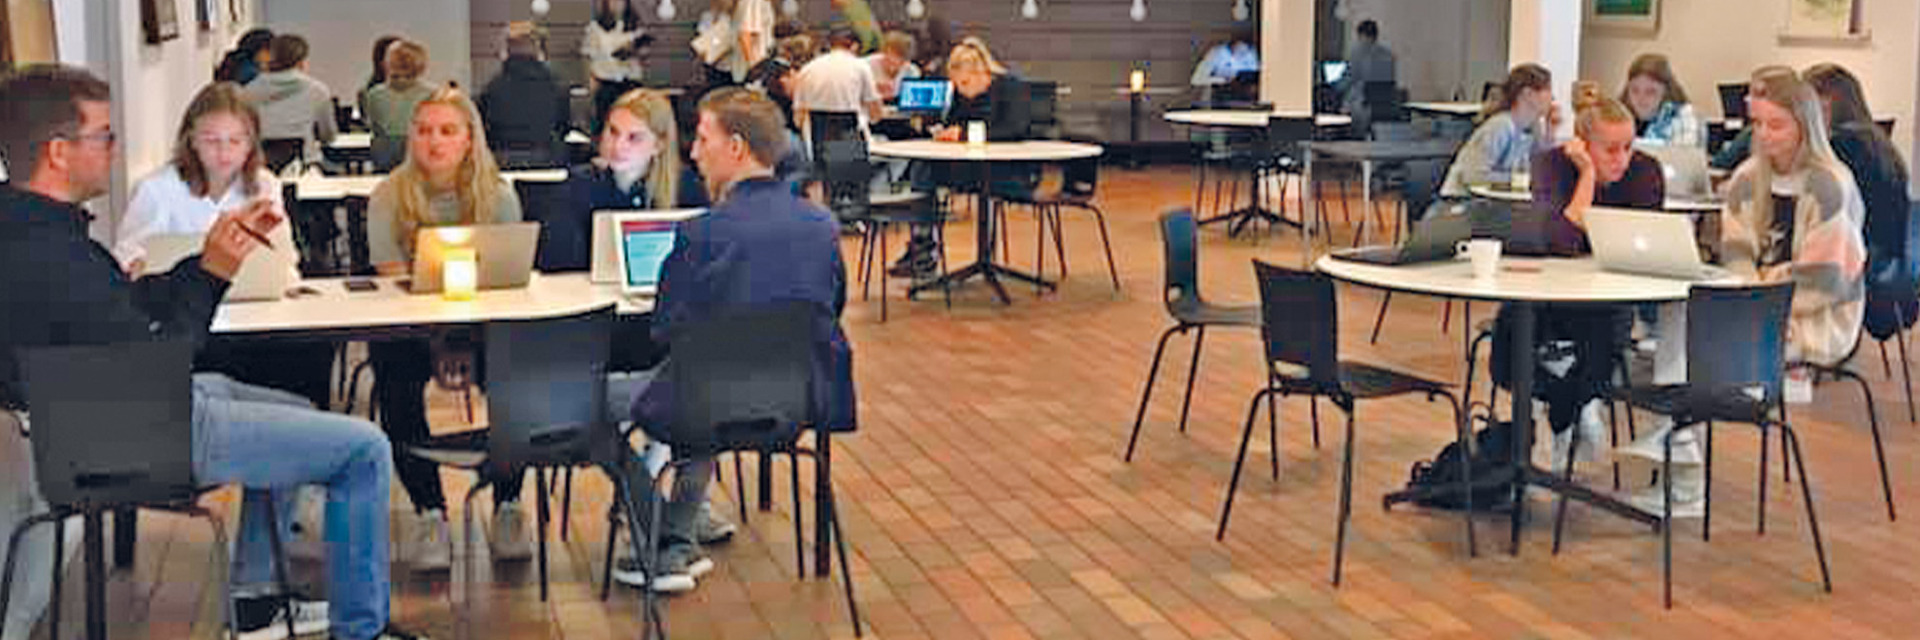 hhx elever til studiecafé på Handelsgymnasiet Silkeborg